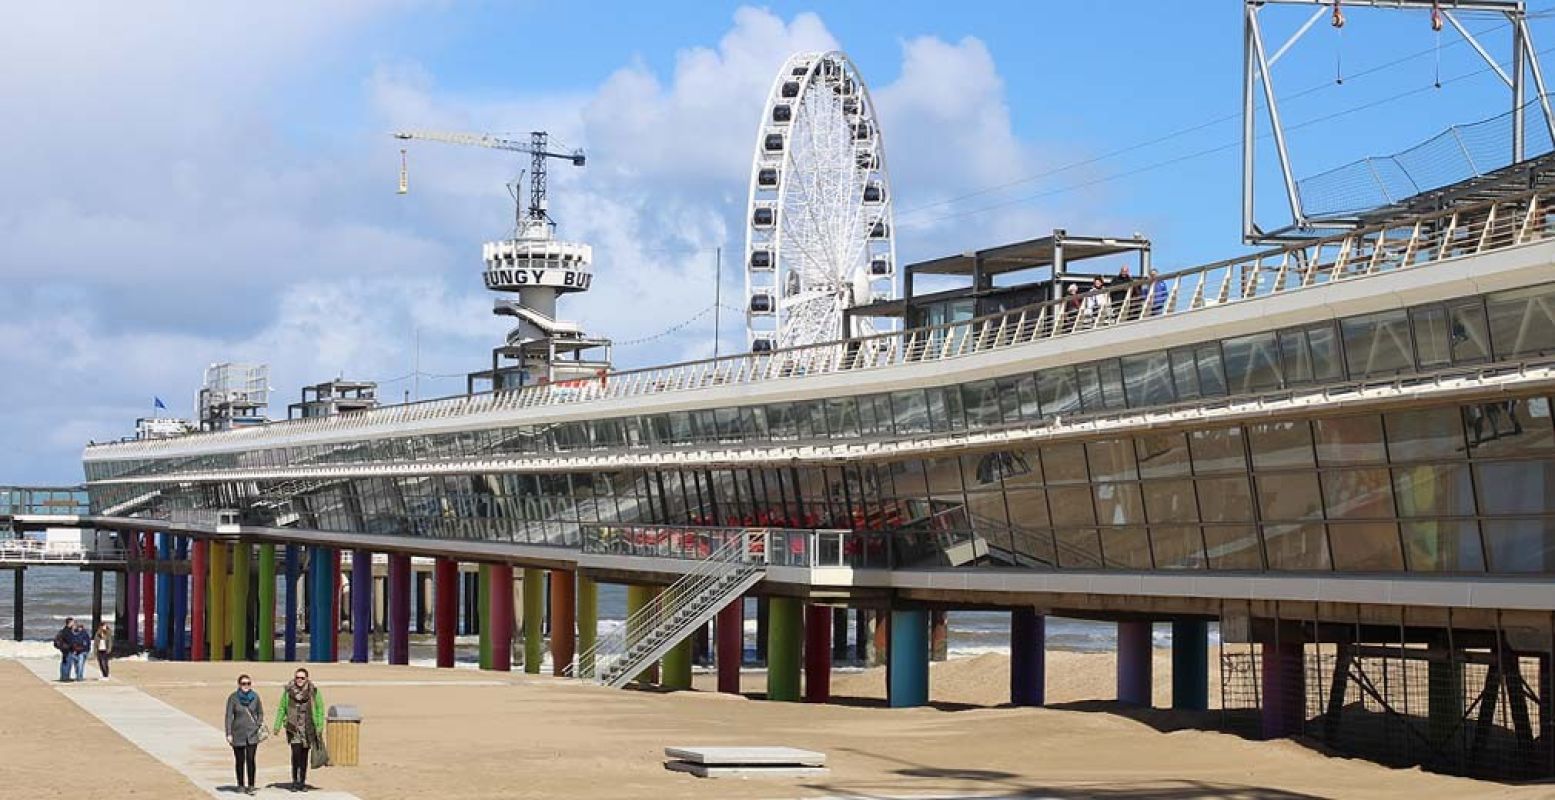 De Pier in Scheveningen is een plaatje, inclusief zipline, reuzenrad en bungeejumptoren. Foto: Redactie DagjeWeg.NL.